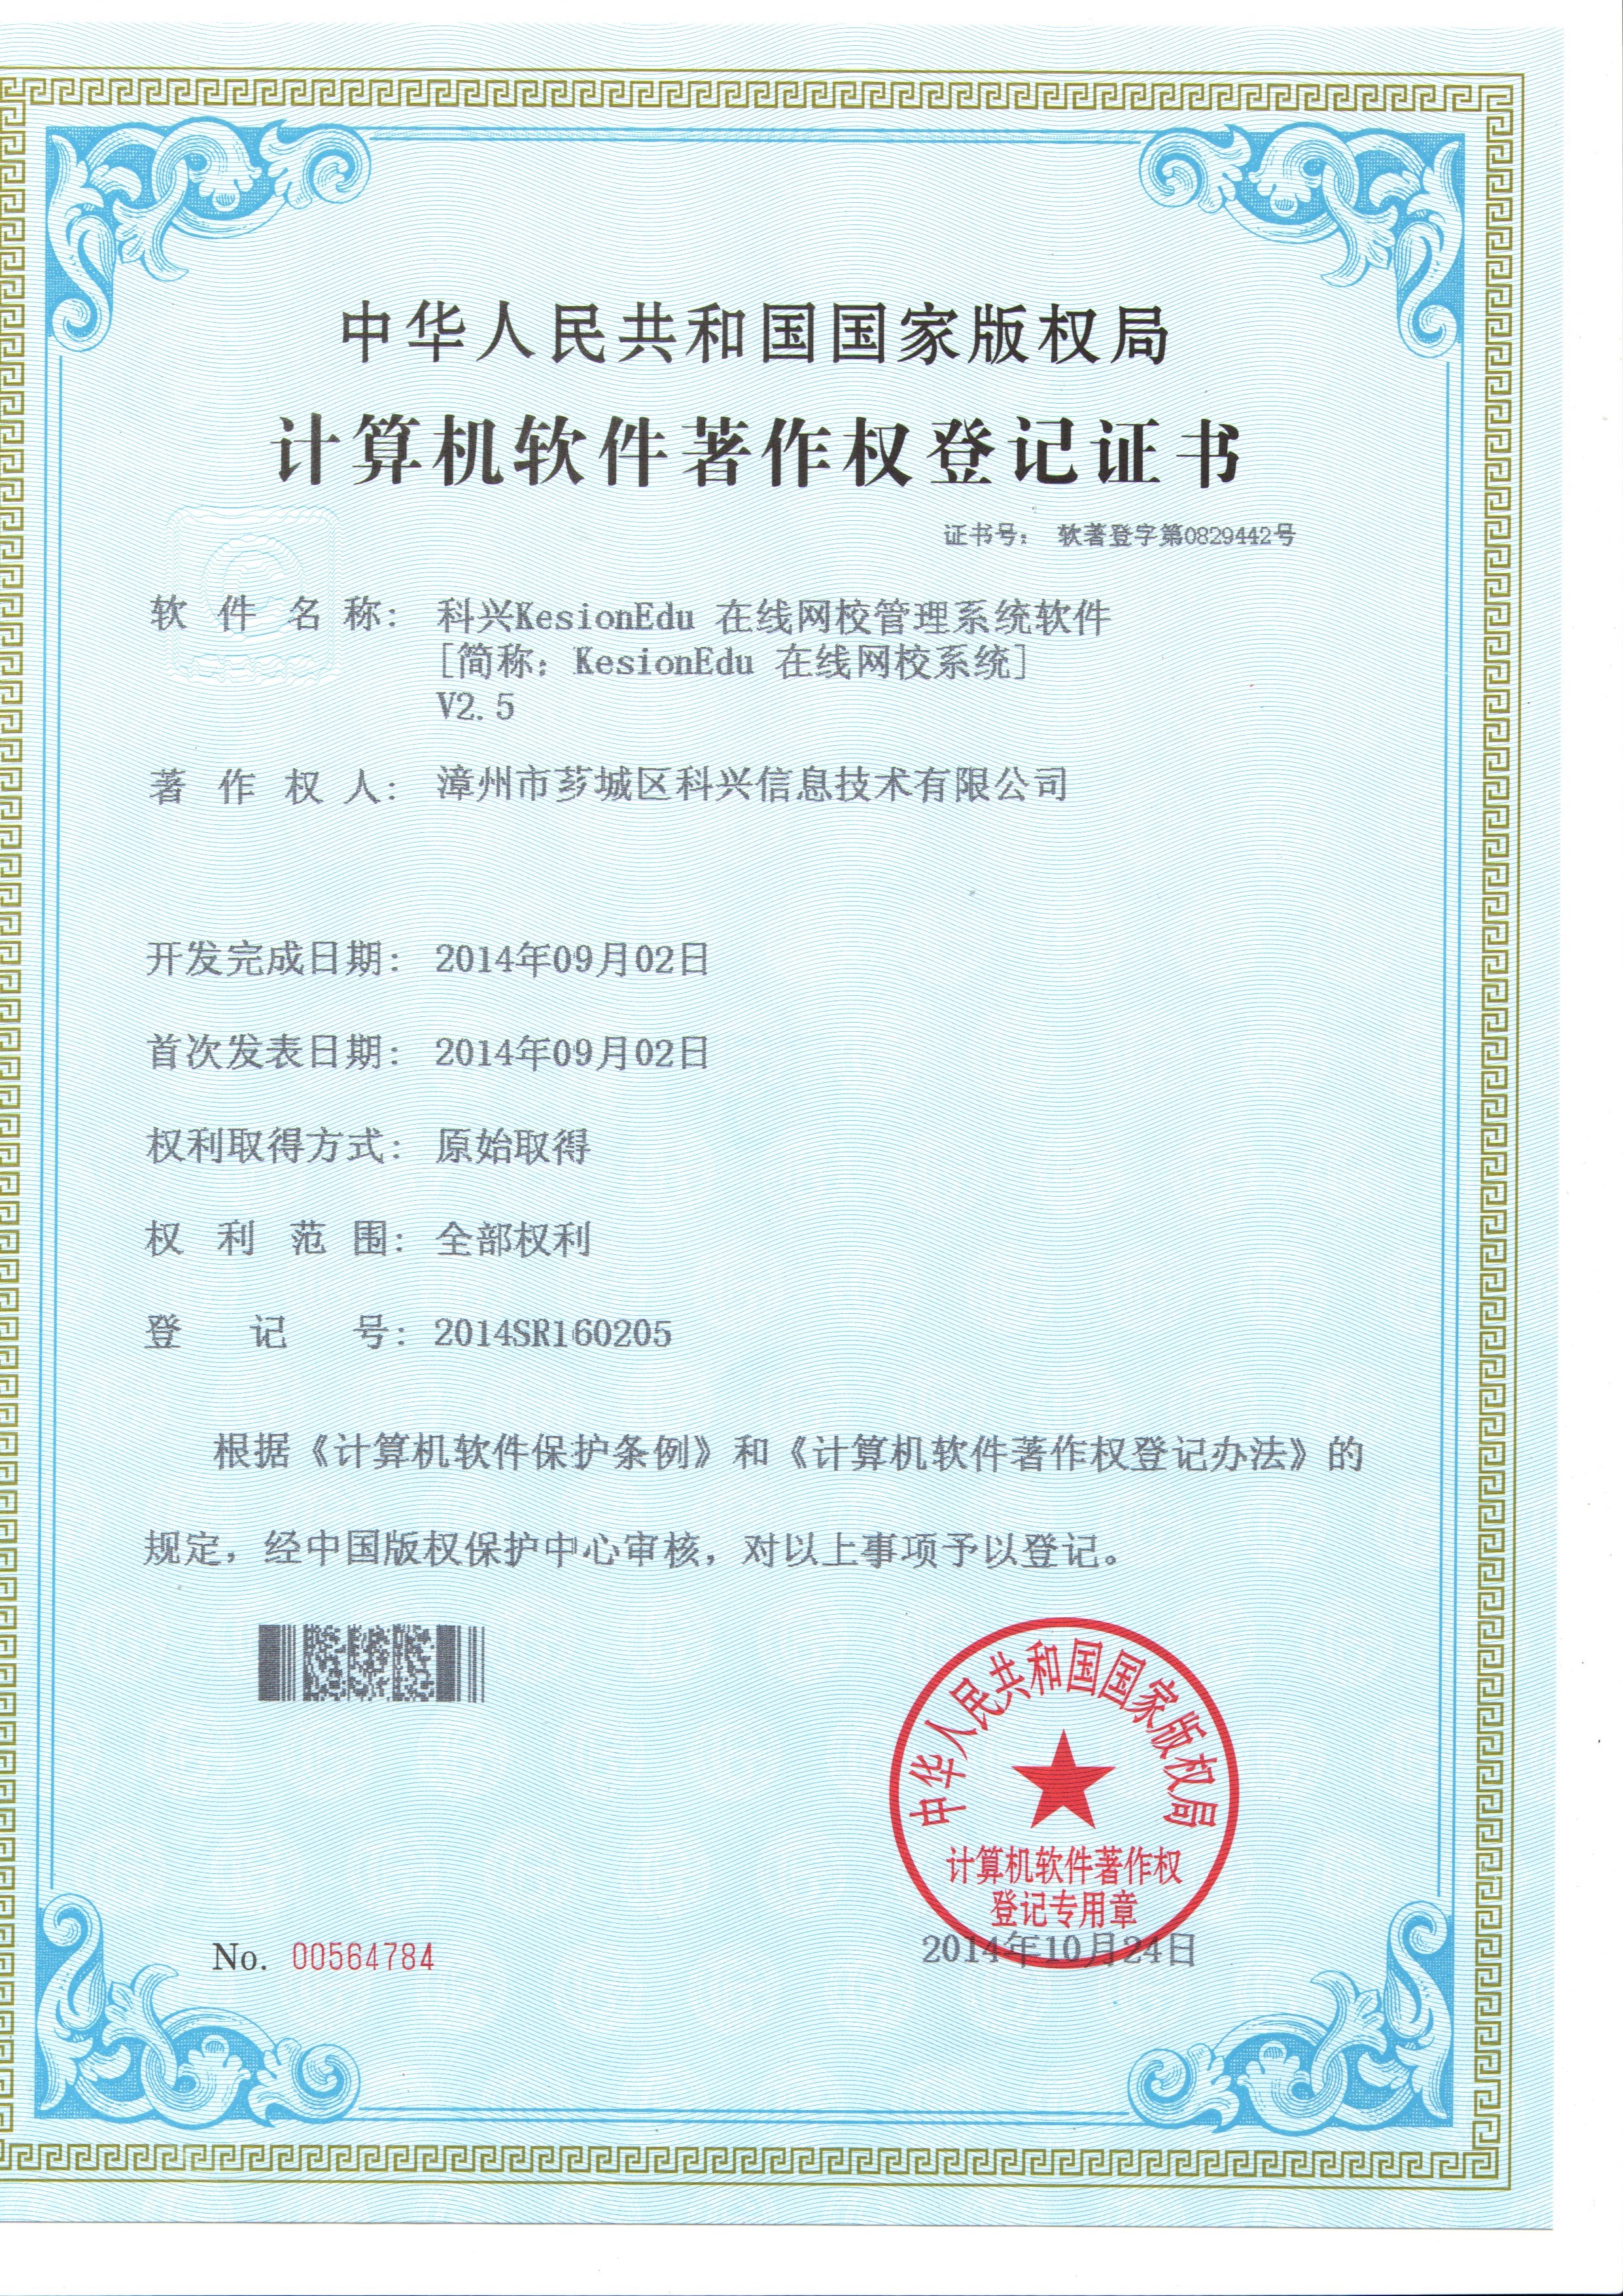 热烈祝贺我司KESIONEDU网校系统获得国家版权登记证书